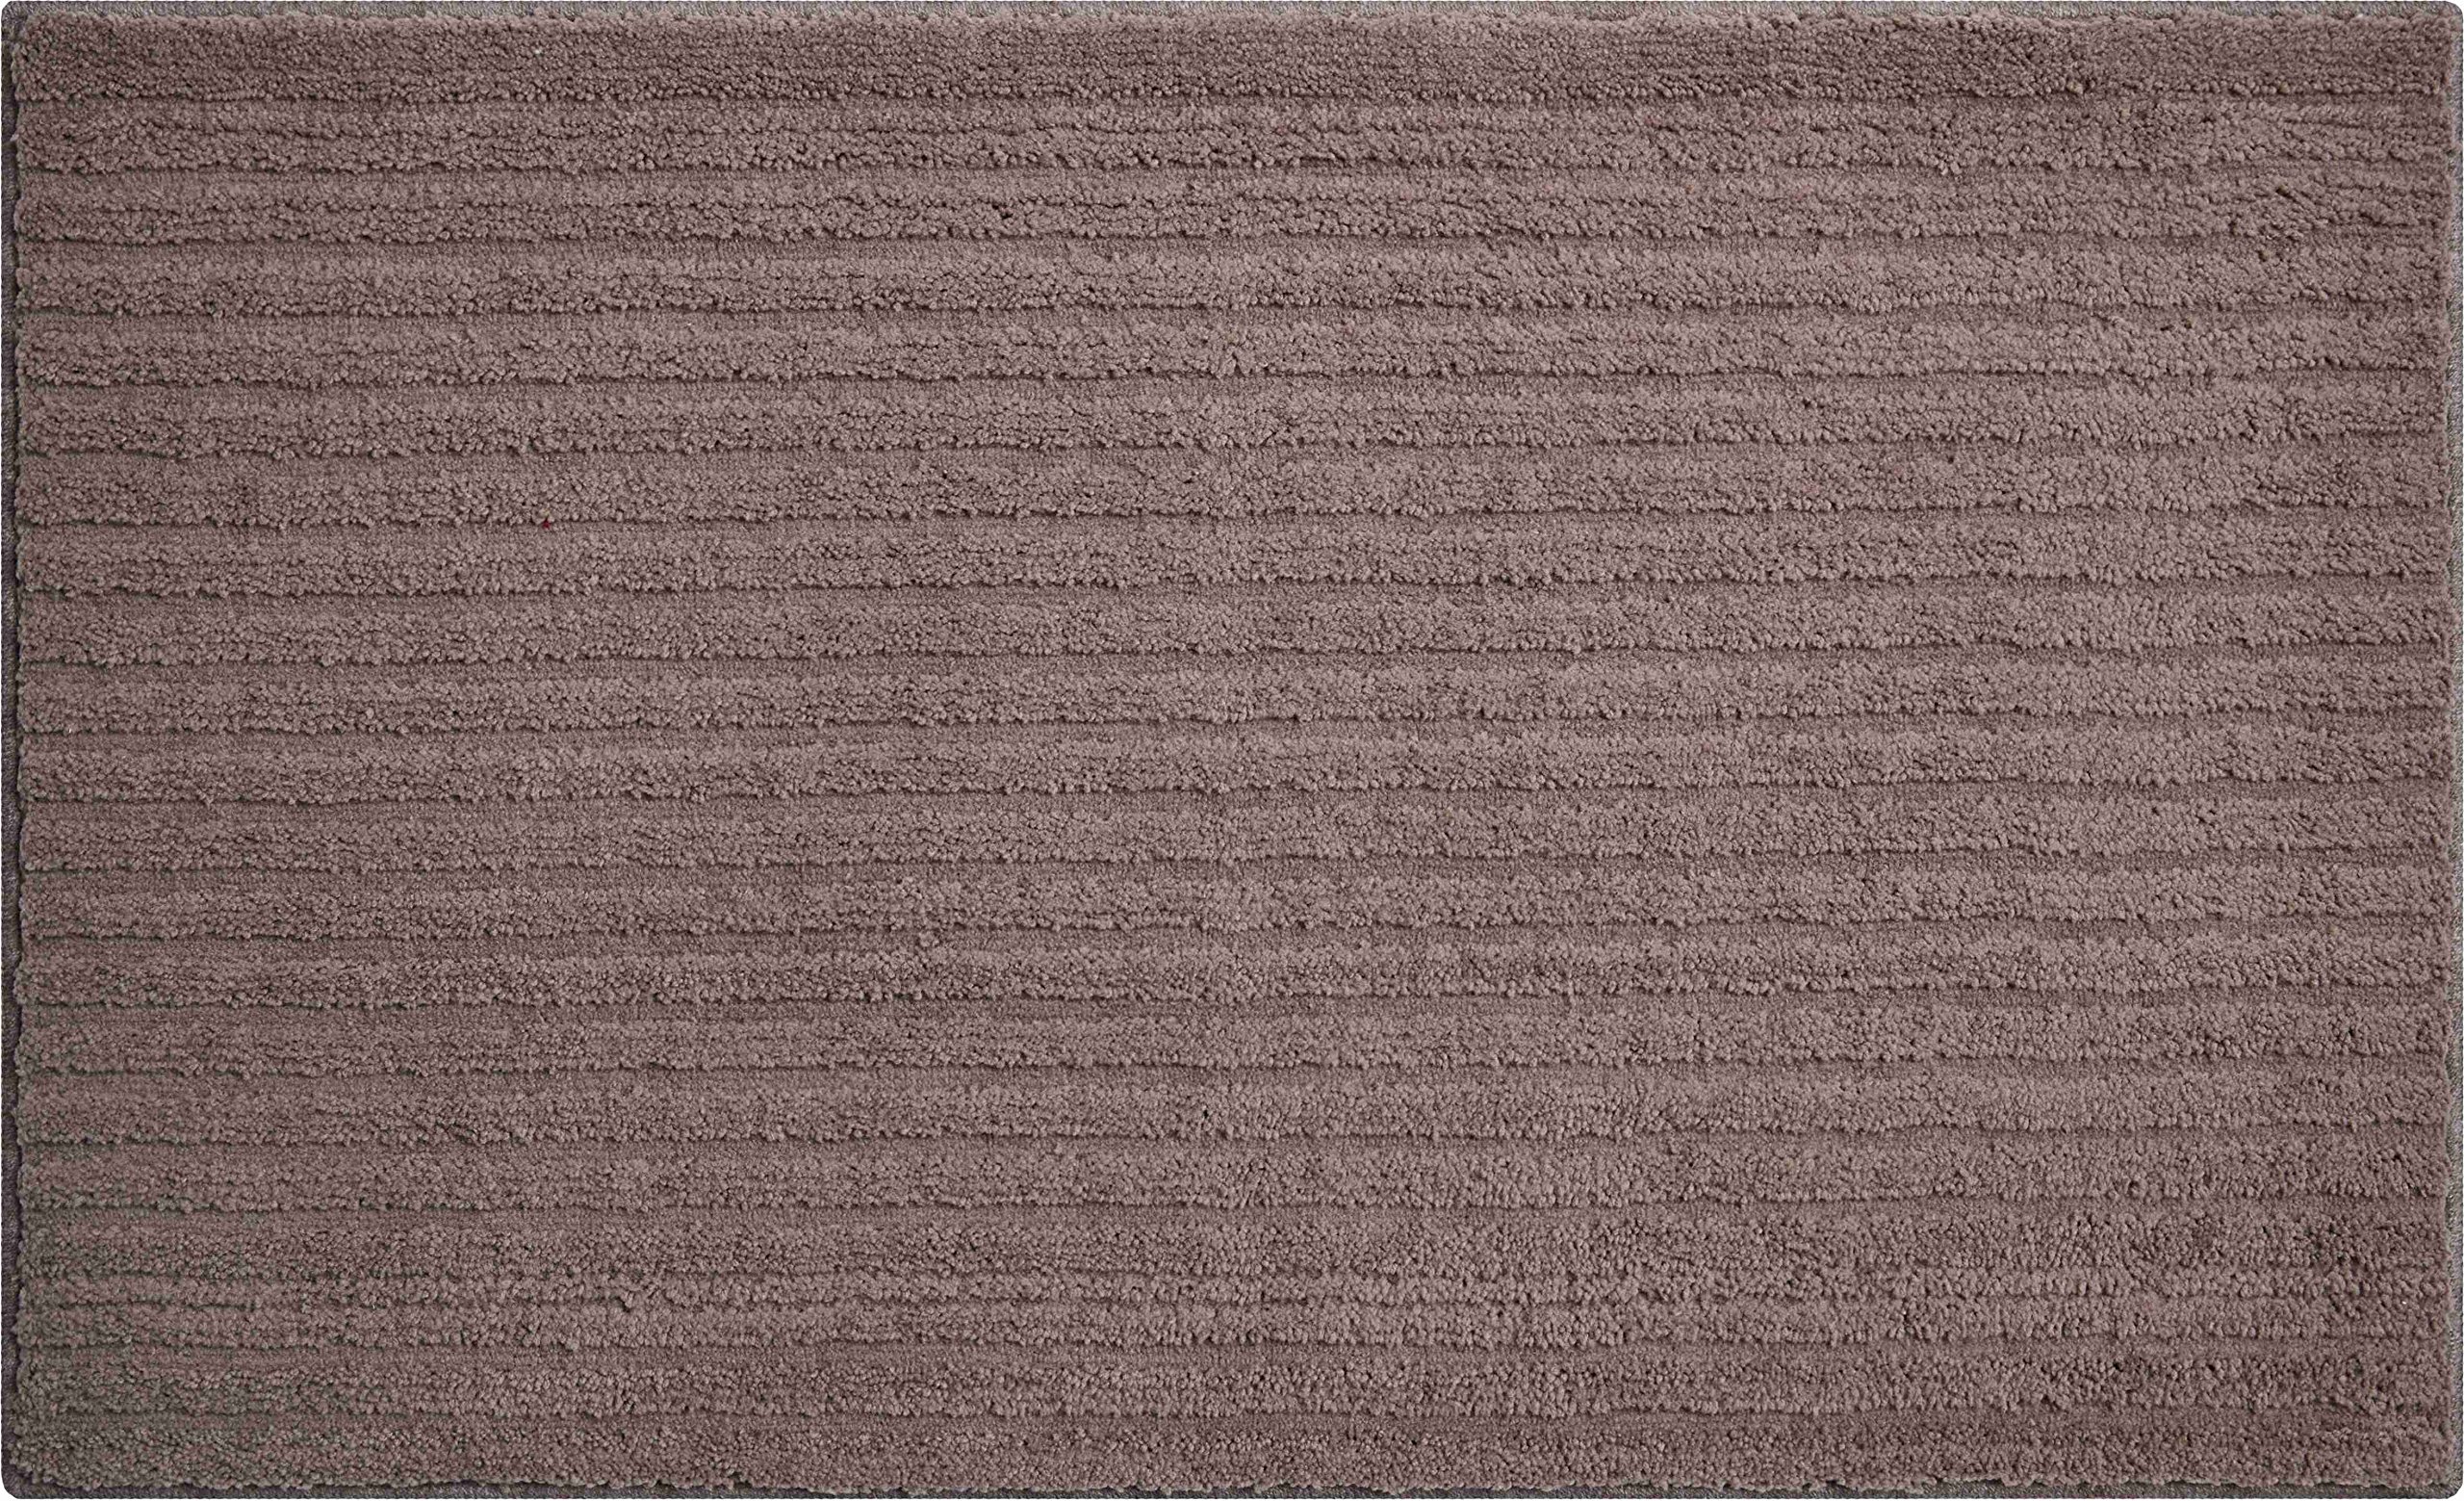 Grund 3D Badteppich 100% Polyester, ultra soft, rutschfest, RIFFLE, Badematte 60x100 cm, kakao